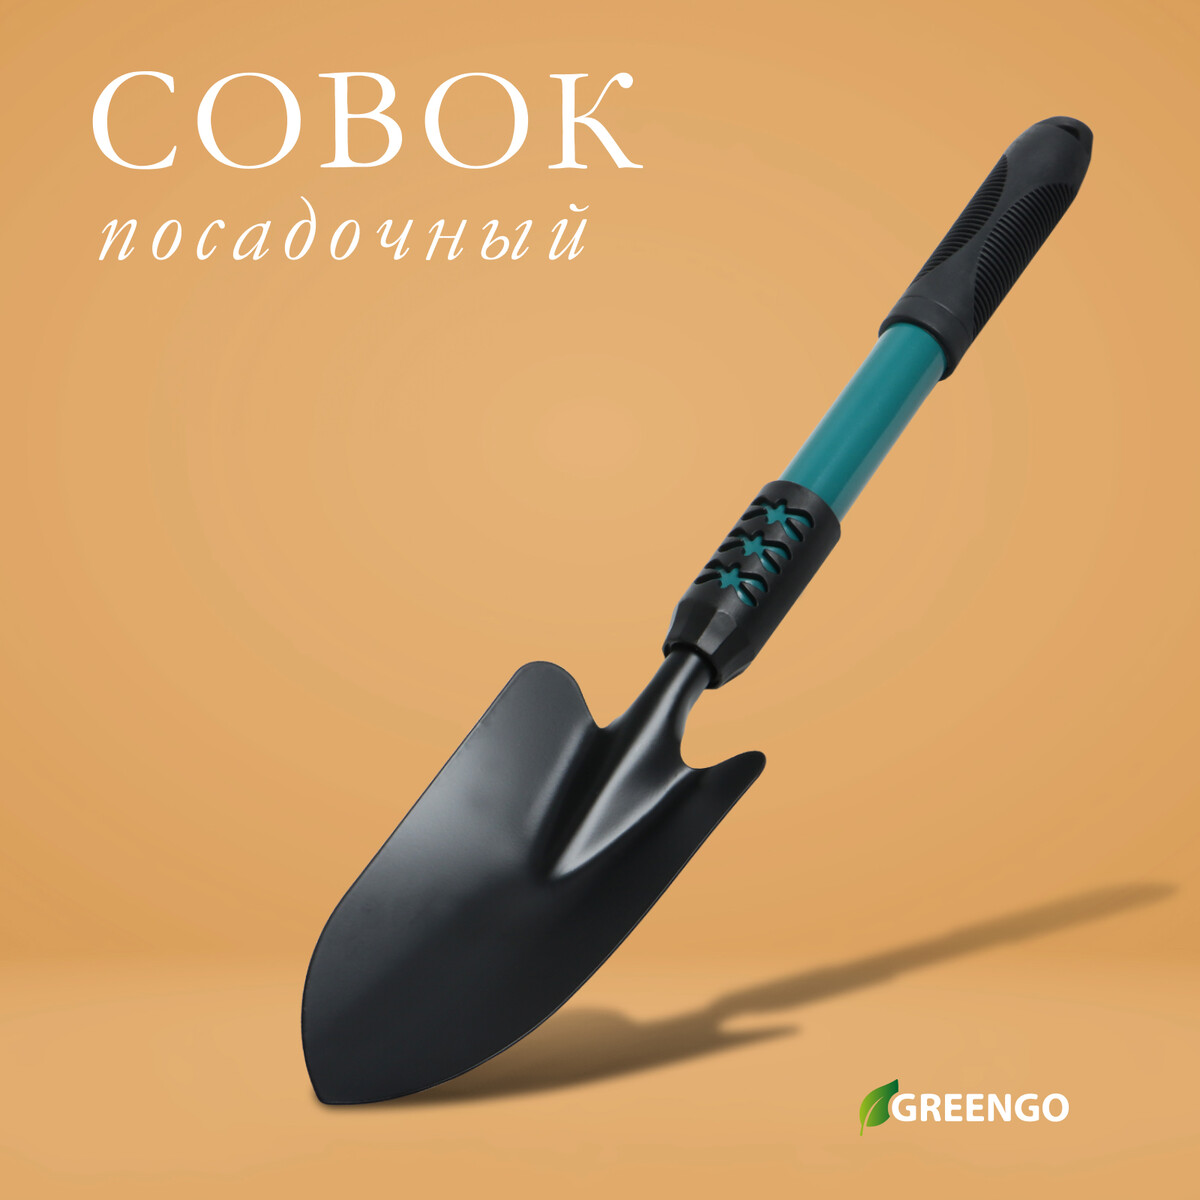 Совок посадочный greengo, длина 45 см, ширина 8,5 см, металлическая рукоять с резиновой ручкой рукоять для тяги на трицепс nt03431